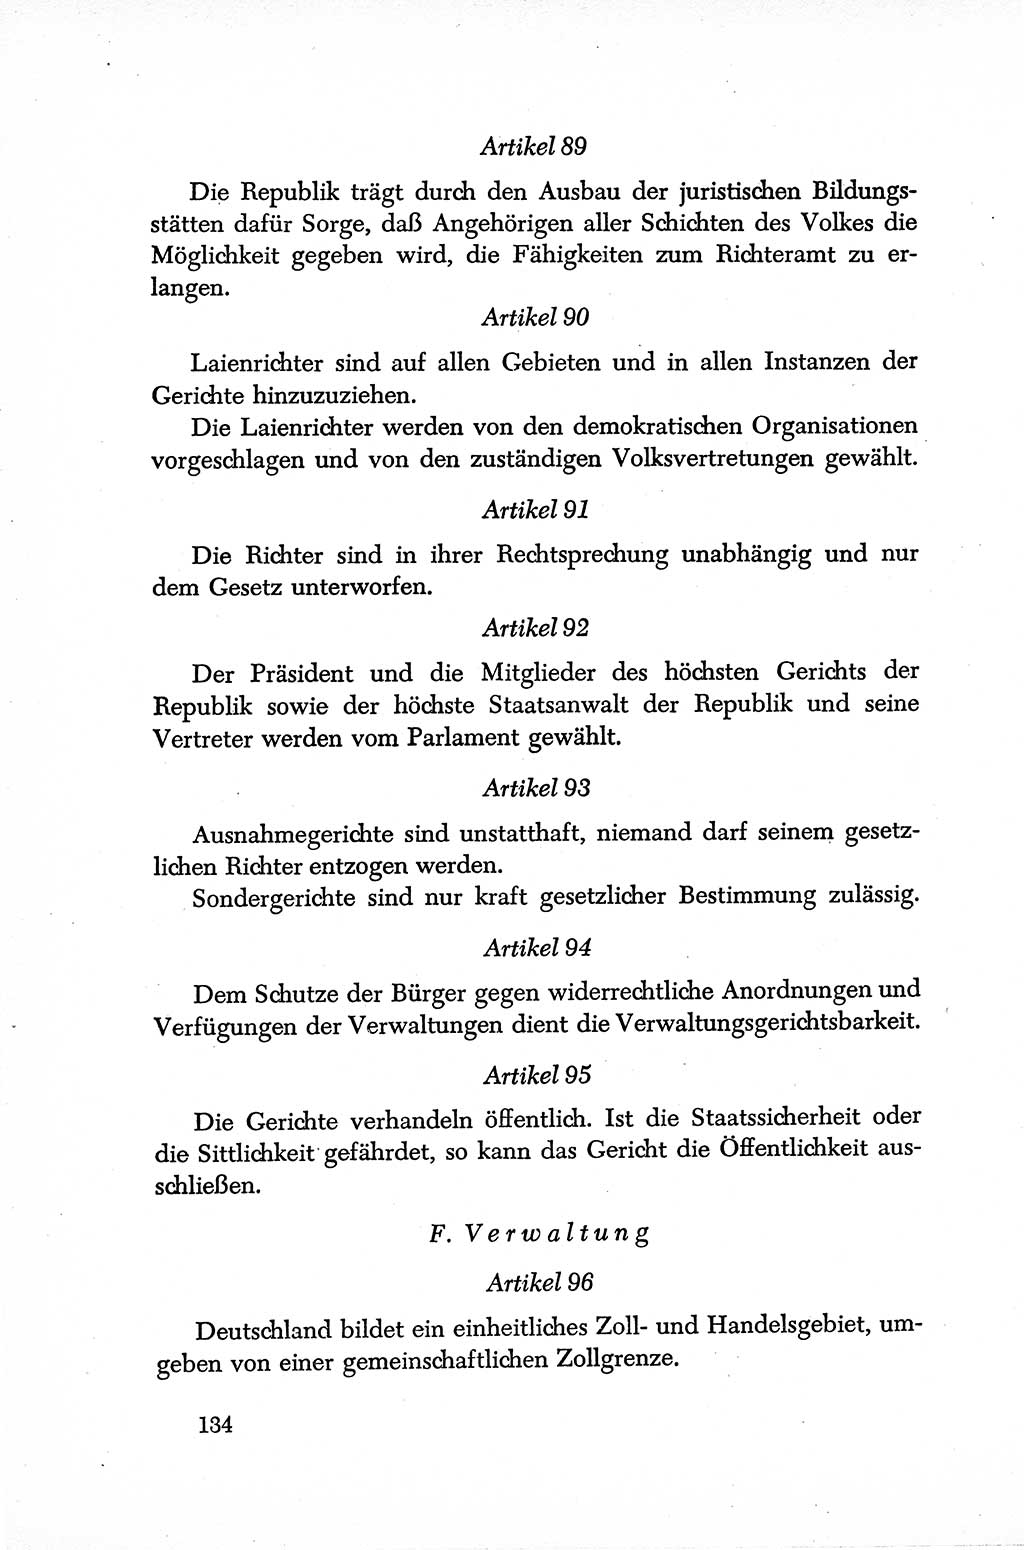 Dokumente der Sozialistischen Einheitspartei Deutschlands (SED) [Sowjetische Besatzungszone (SBZ) Deutschlands] 1946-1948, Seite 134 (Dok. SED SBZ Dtl. 1946-1948, S. 134)